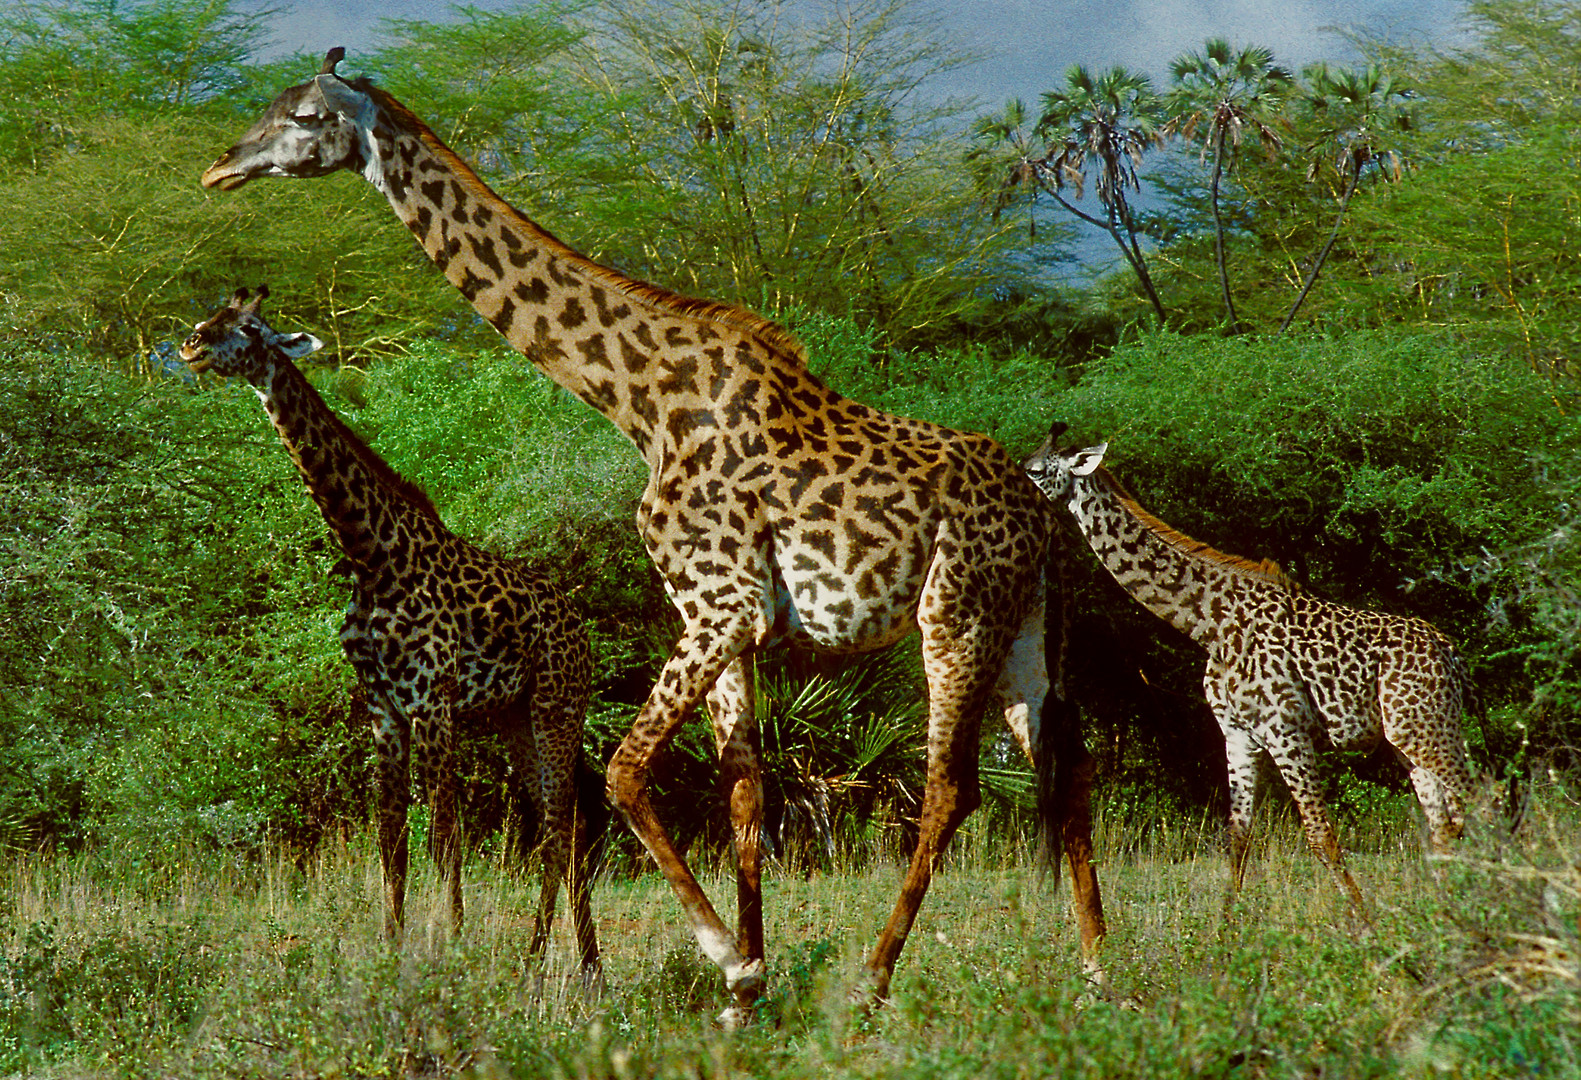 Giraffenparade im Tsavo-West